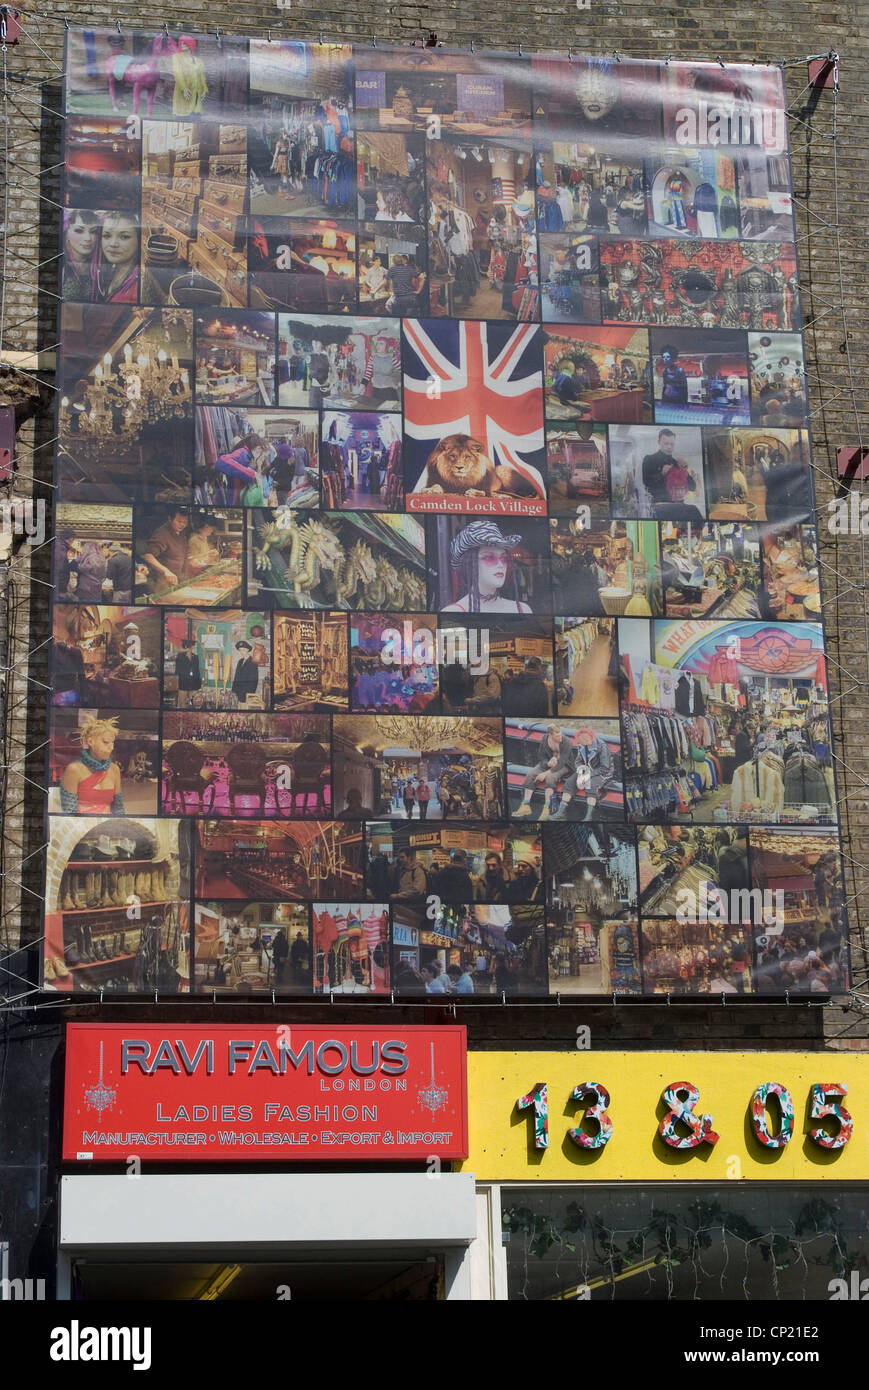 Zusammenstellung von Fotos an der Wand am Camden Village, in der Nähe von Camden Lock, Camden High Street, London NW1, England Stockfoto